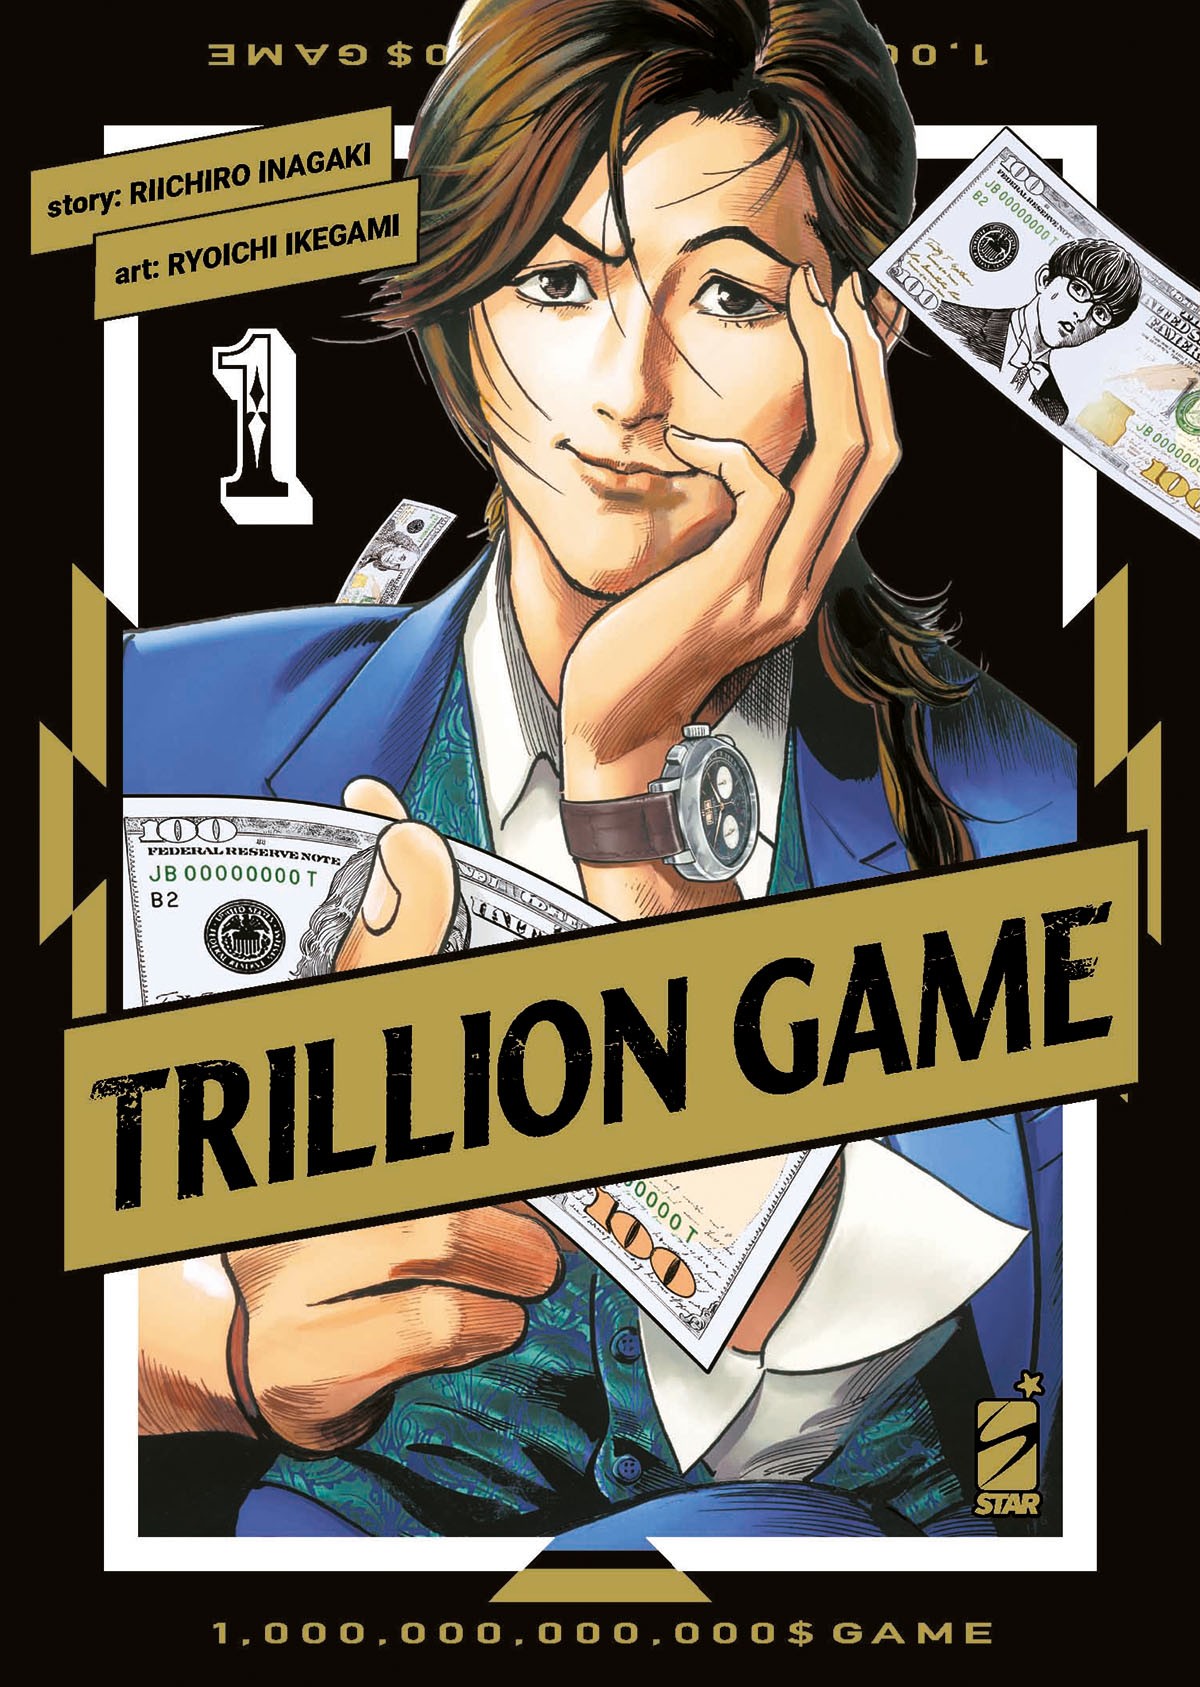 Trillion Game 1 (Star Comics, ott. 2022)